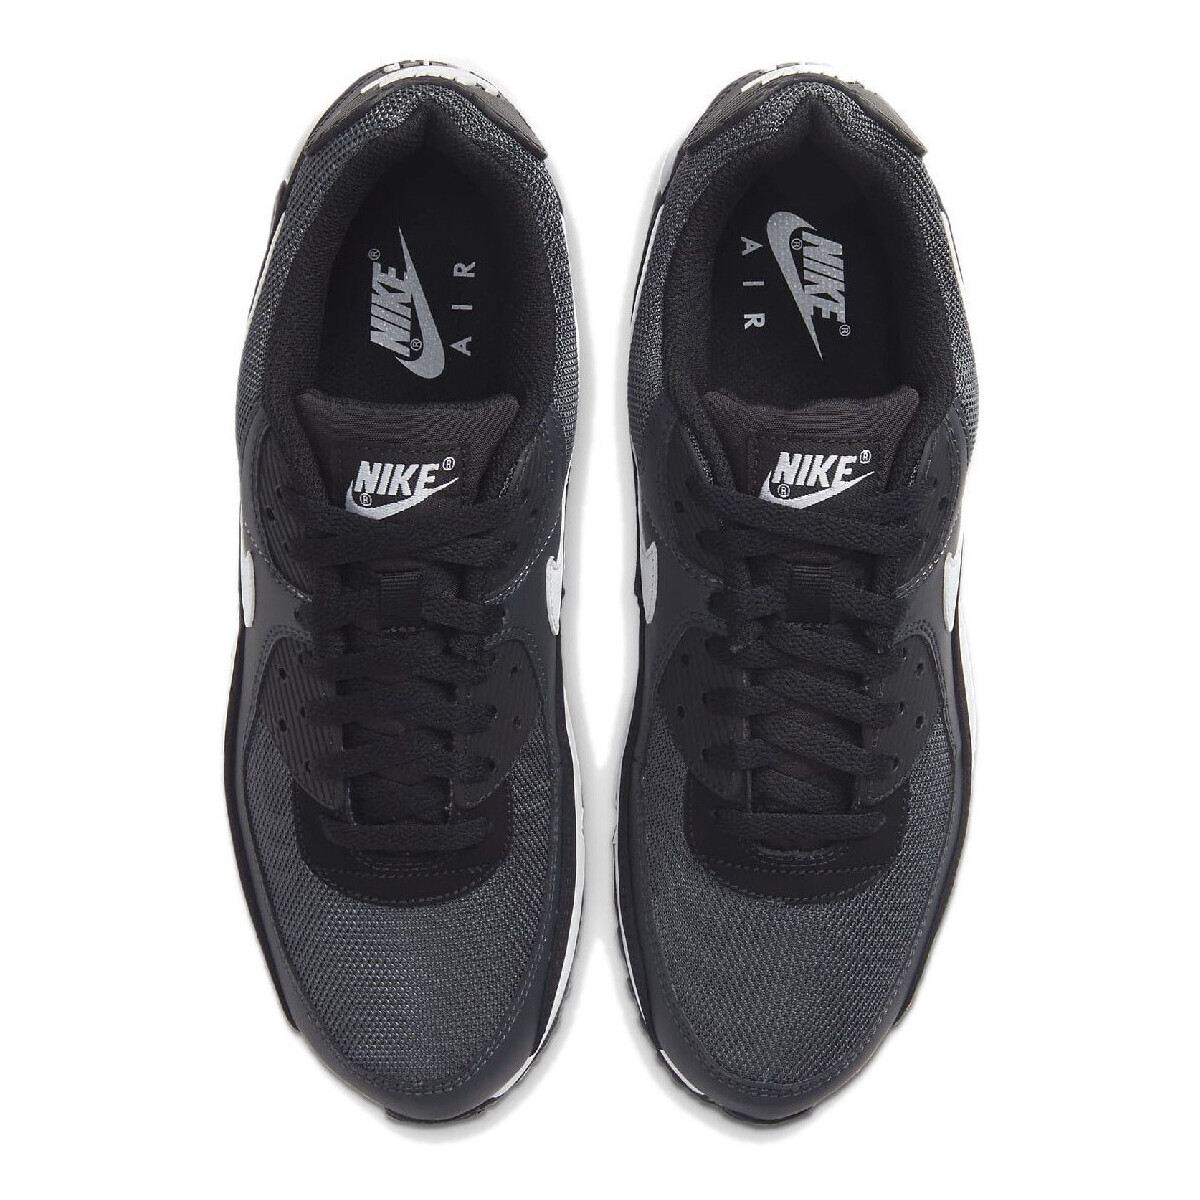 Nike Gris AIR MAX 90 vfccg9G2